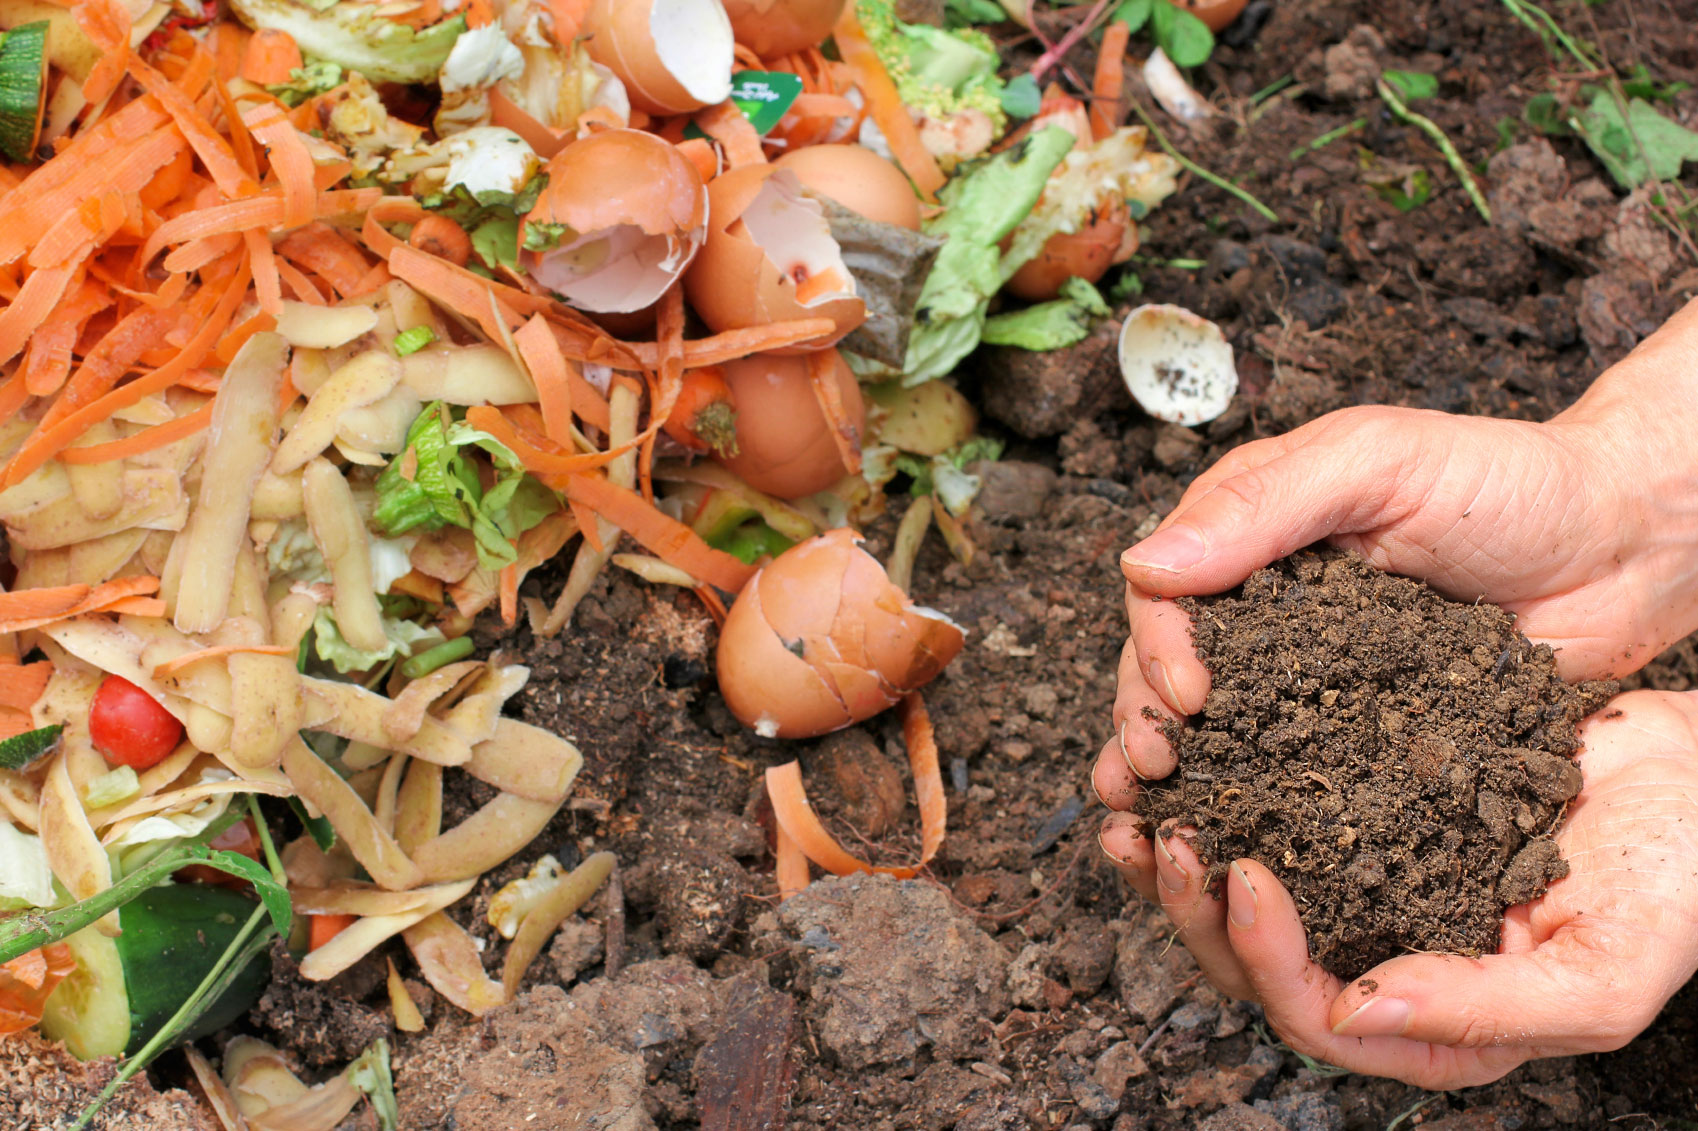 Mes del Compostaje: cómo transformar los residuos en abono en casa